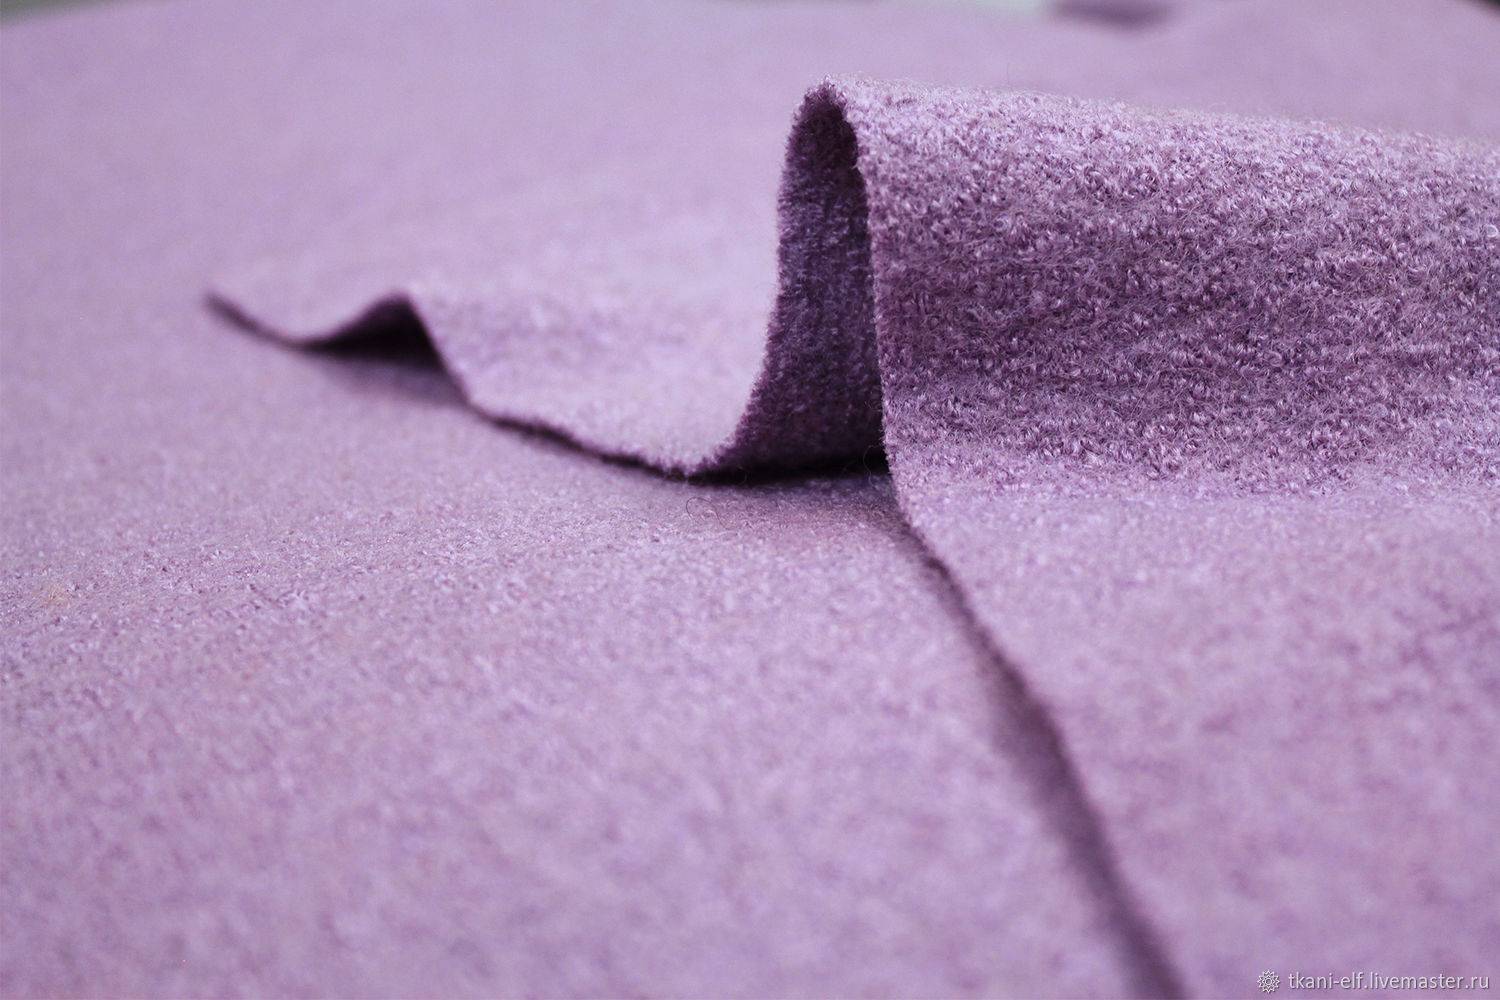 Ткань лоден – что за материал и где его используют?